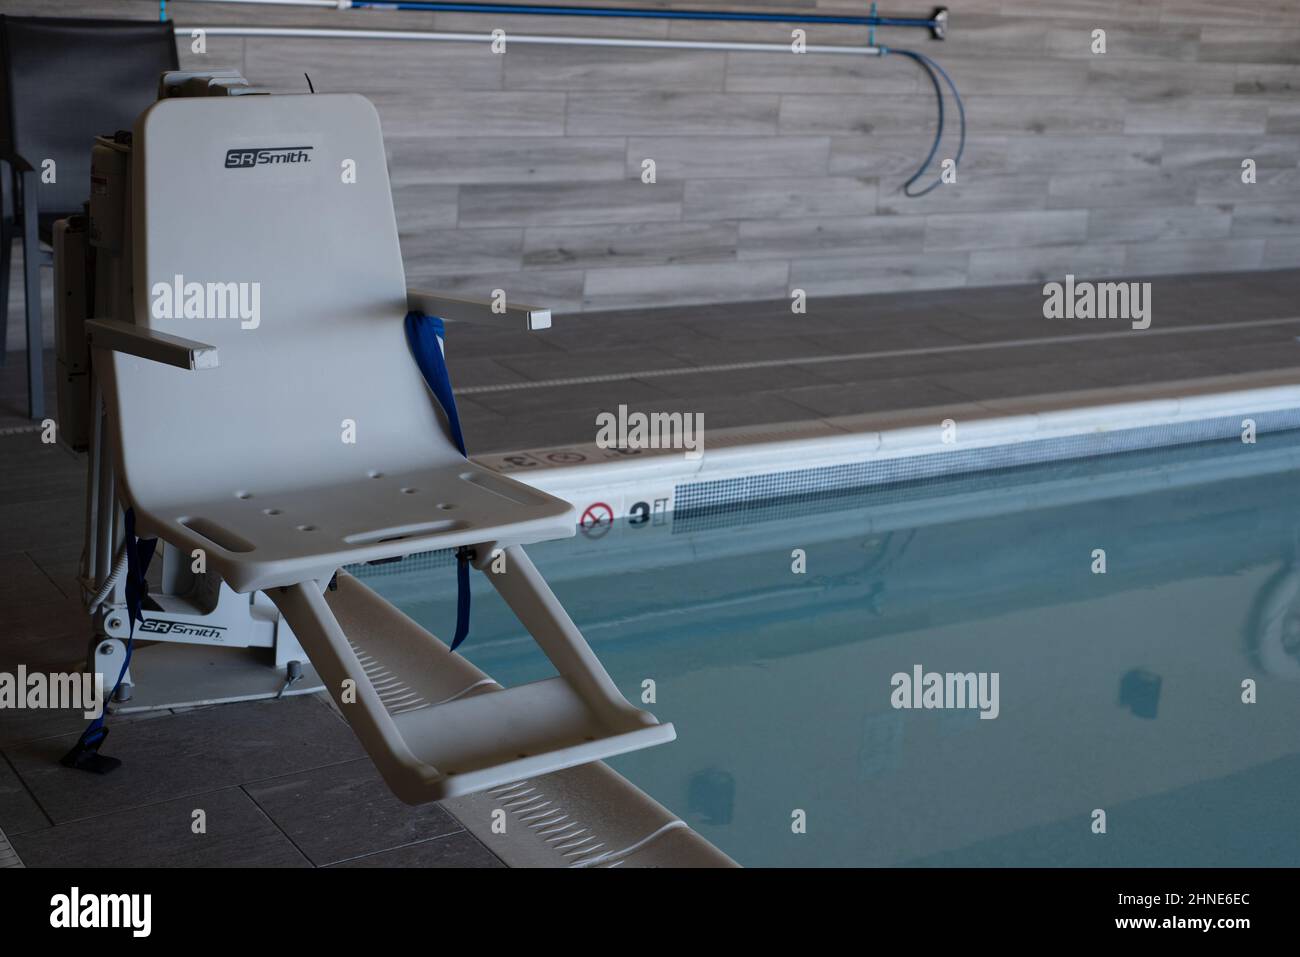 Ascensore per la piscina conforme ai requisiti ADA della SR Smith, situato ai margini di una piscina interna al coperto. Foto Stock